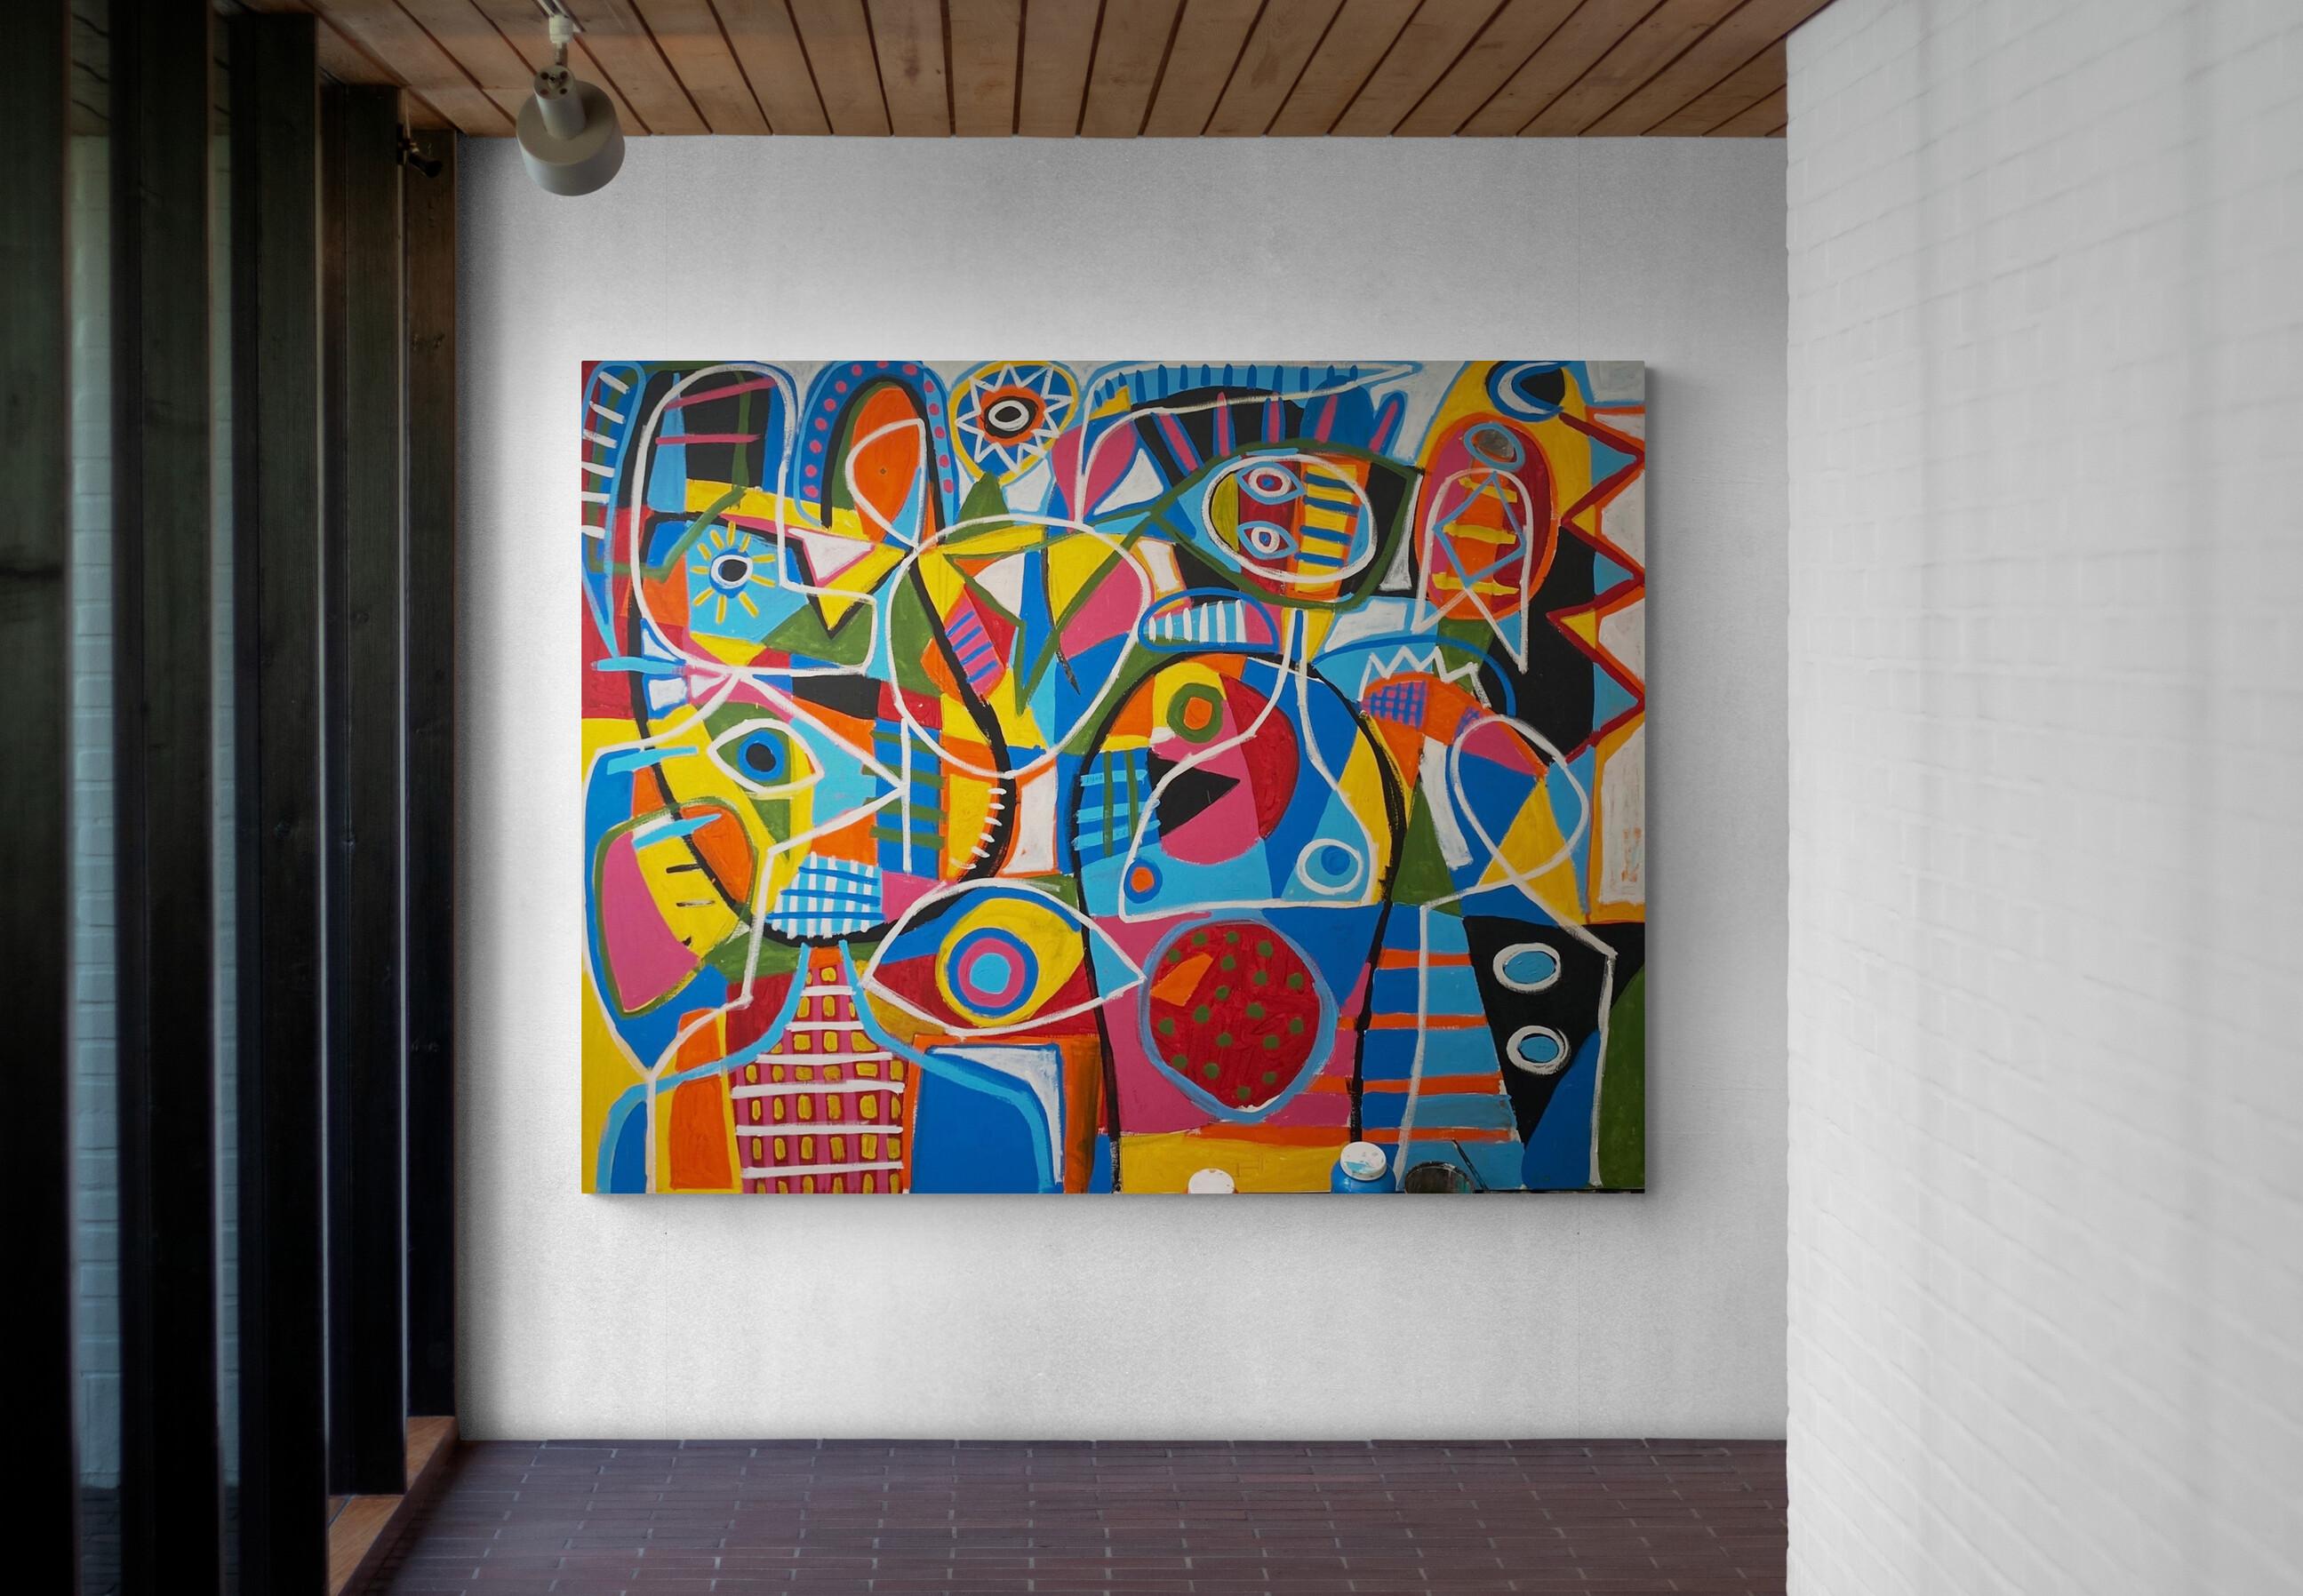 Improvisacion, Art contemporain, Peinture abstraite, 21ème siècle - Painting de Enrique Pichardo